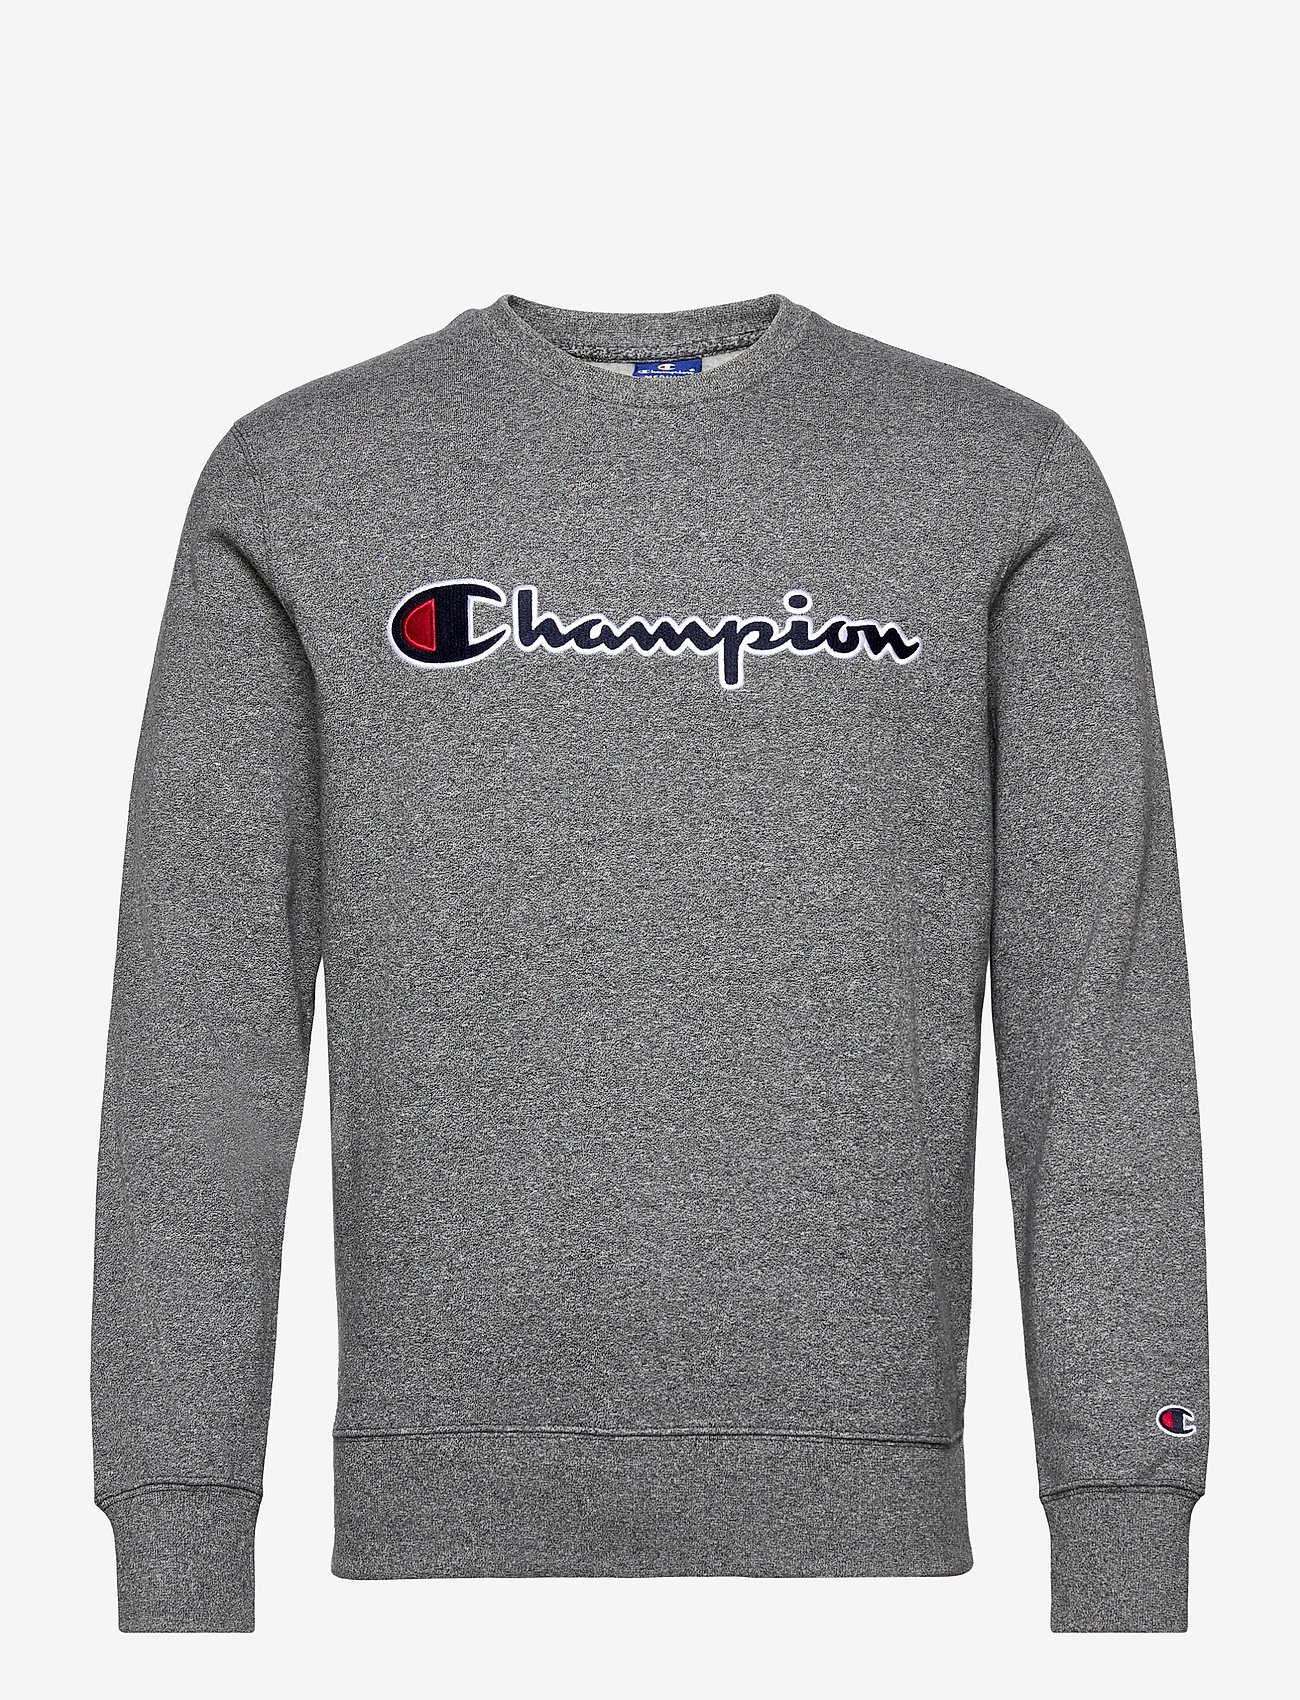 velsignelse Observation sekvens Champion Crewneck Sweatshirt (Dark Graphite Grey Melange Jasp├¿ Top Dyed),  450 kr | Stort udvalg af designer mærker | Booztlet.com